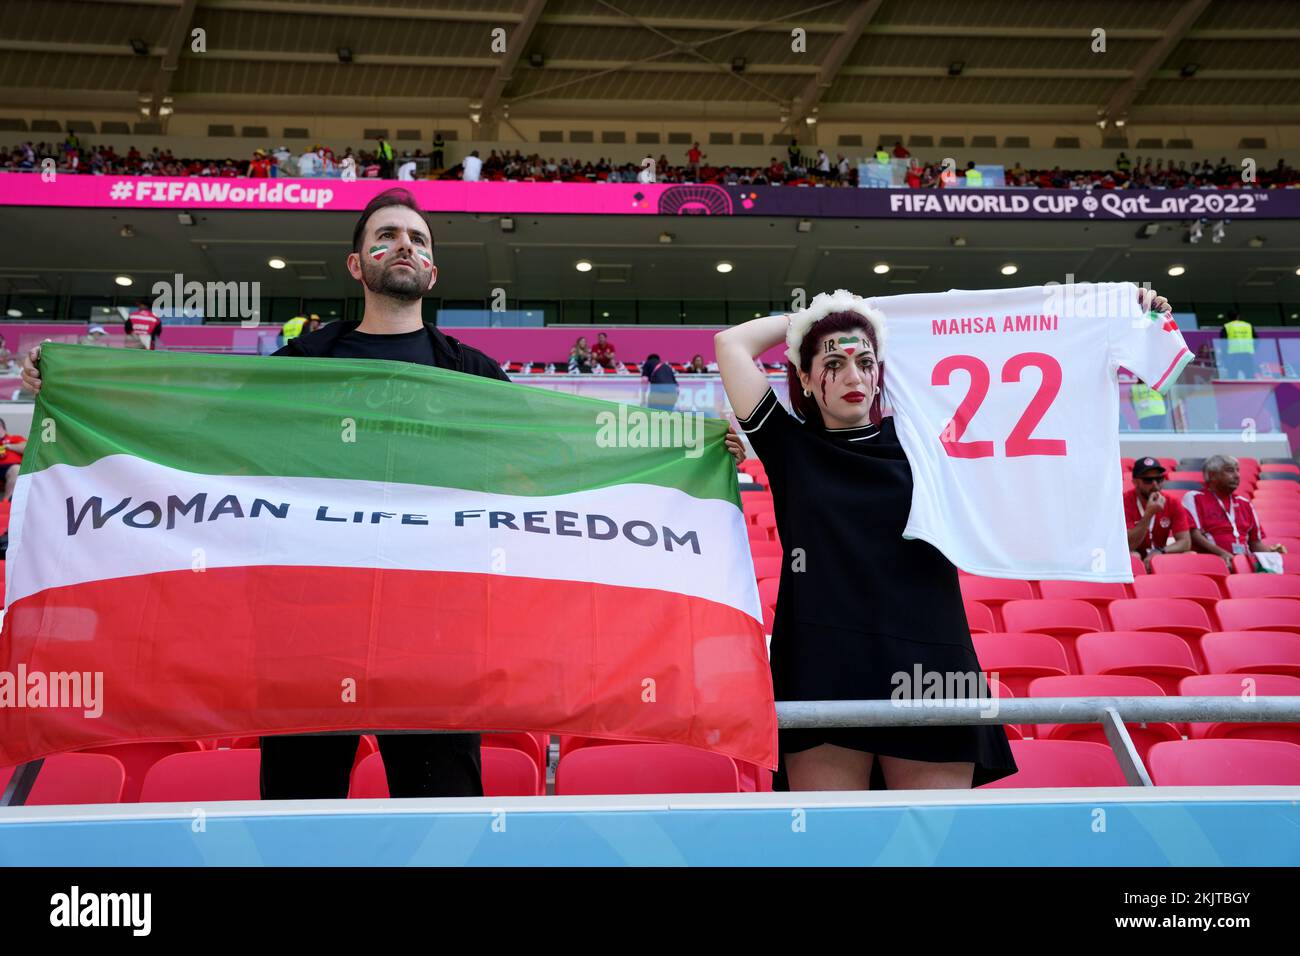 Un fan de l’Iran tenant un maillot à la mémoire de Mahsa Amini, une kurde décédée à l’âge de 22 ans, sous la garde de la police de moralité du pays dans la capitale, Téhéran, avant le match de la coupe du monde de la FIFA du groupe B au stade Ahmad Bin Ali, Al-Rayyan. Date de la photo: Vendredi 25 novembre 2022. Banque D'Images